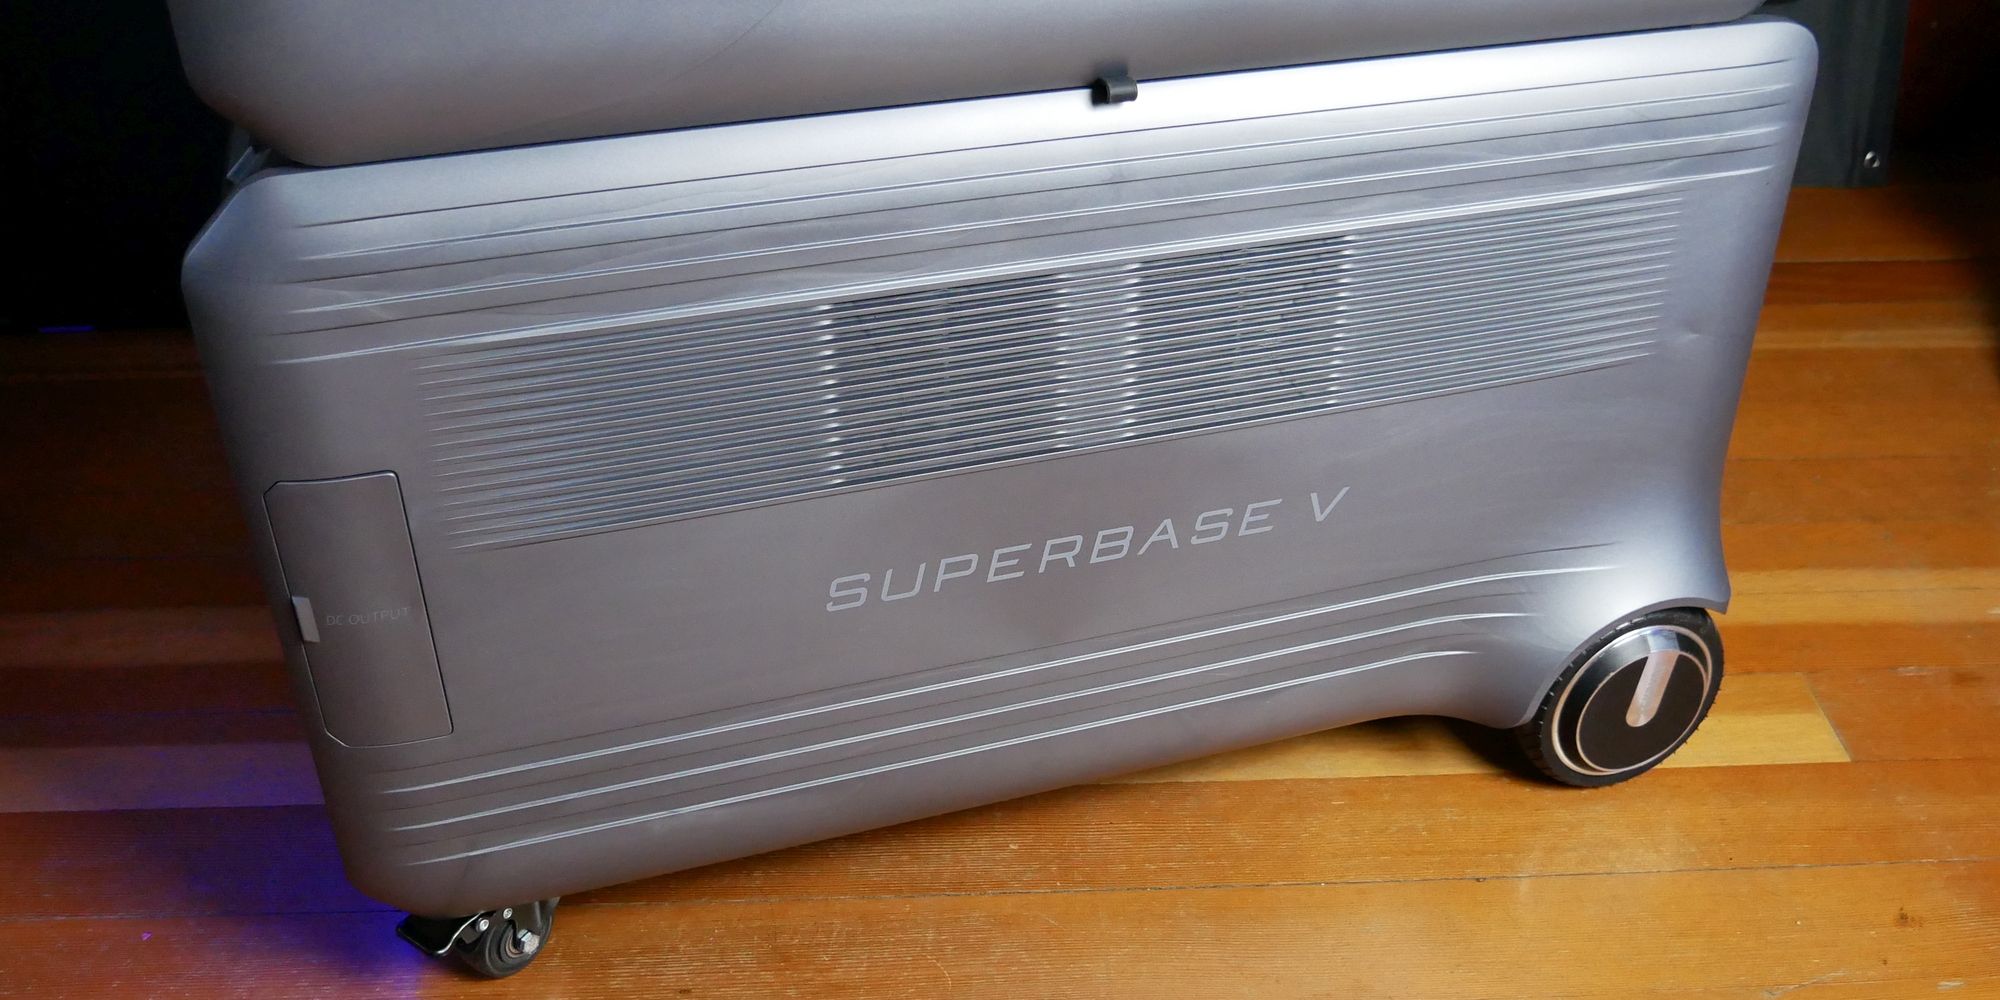 Zendure SuperBase V6400 Side View